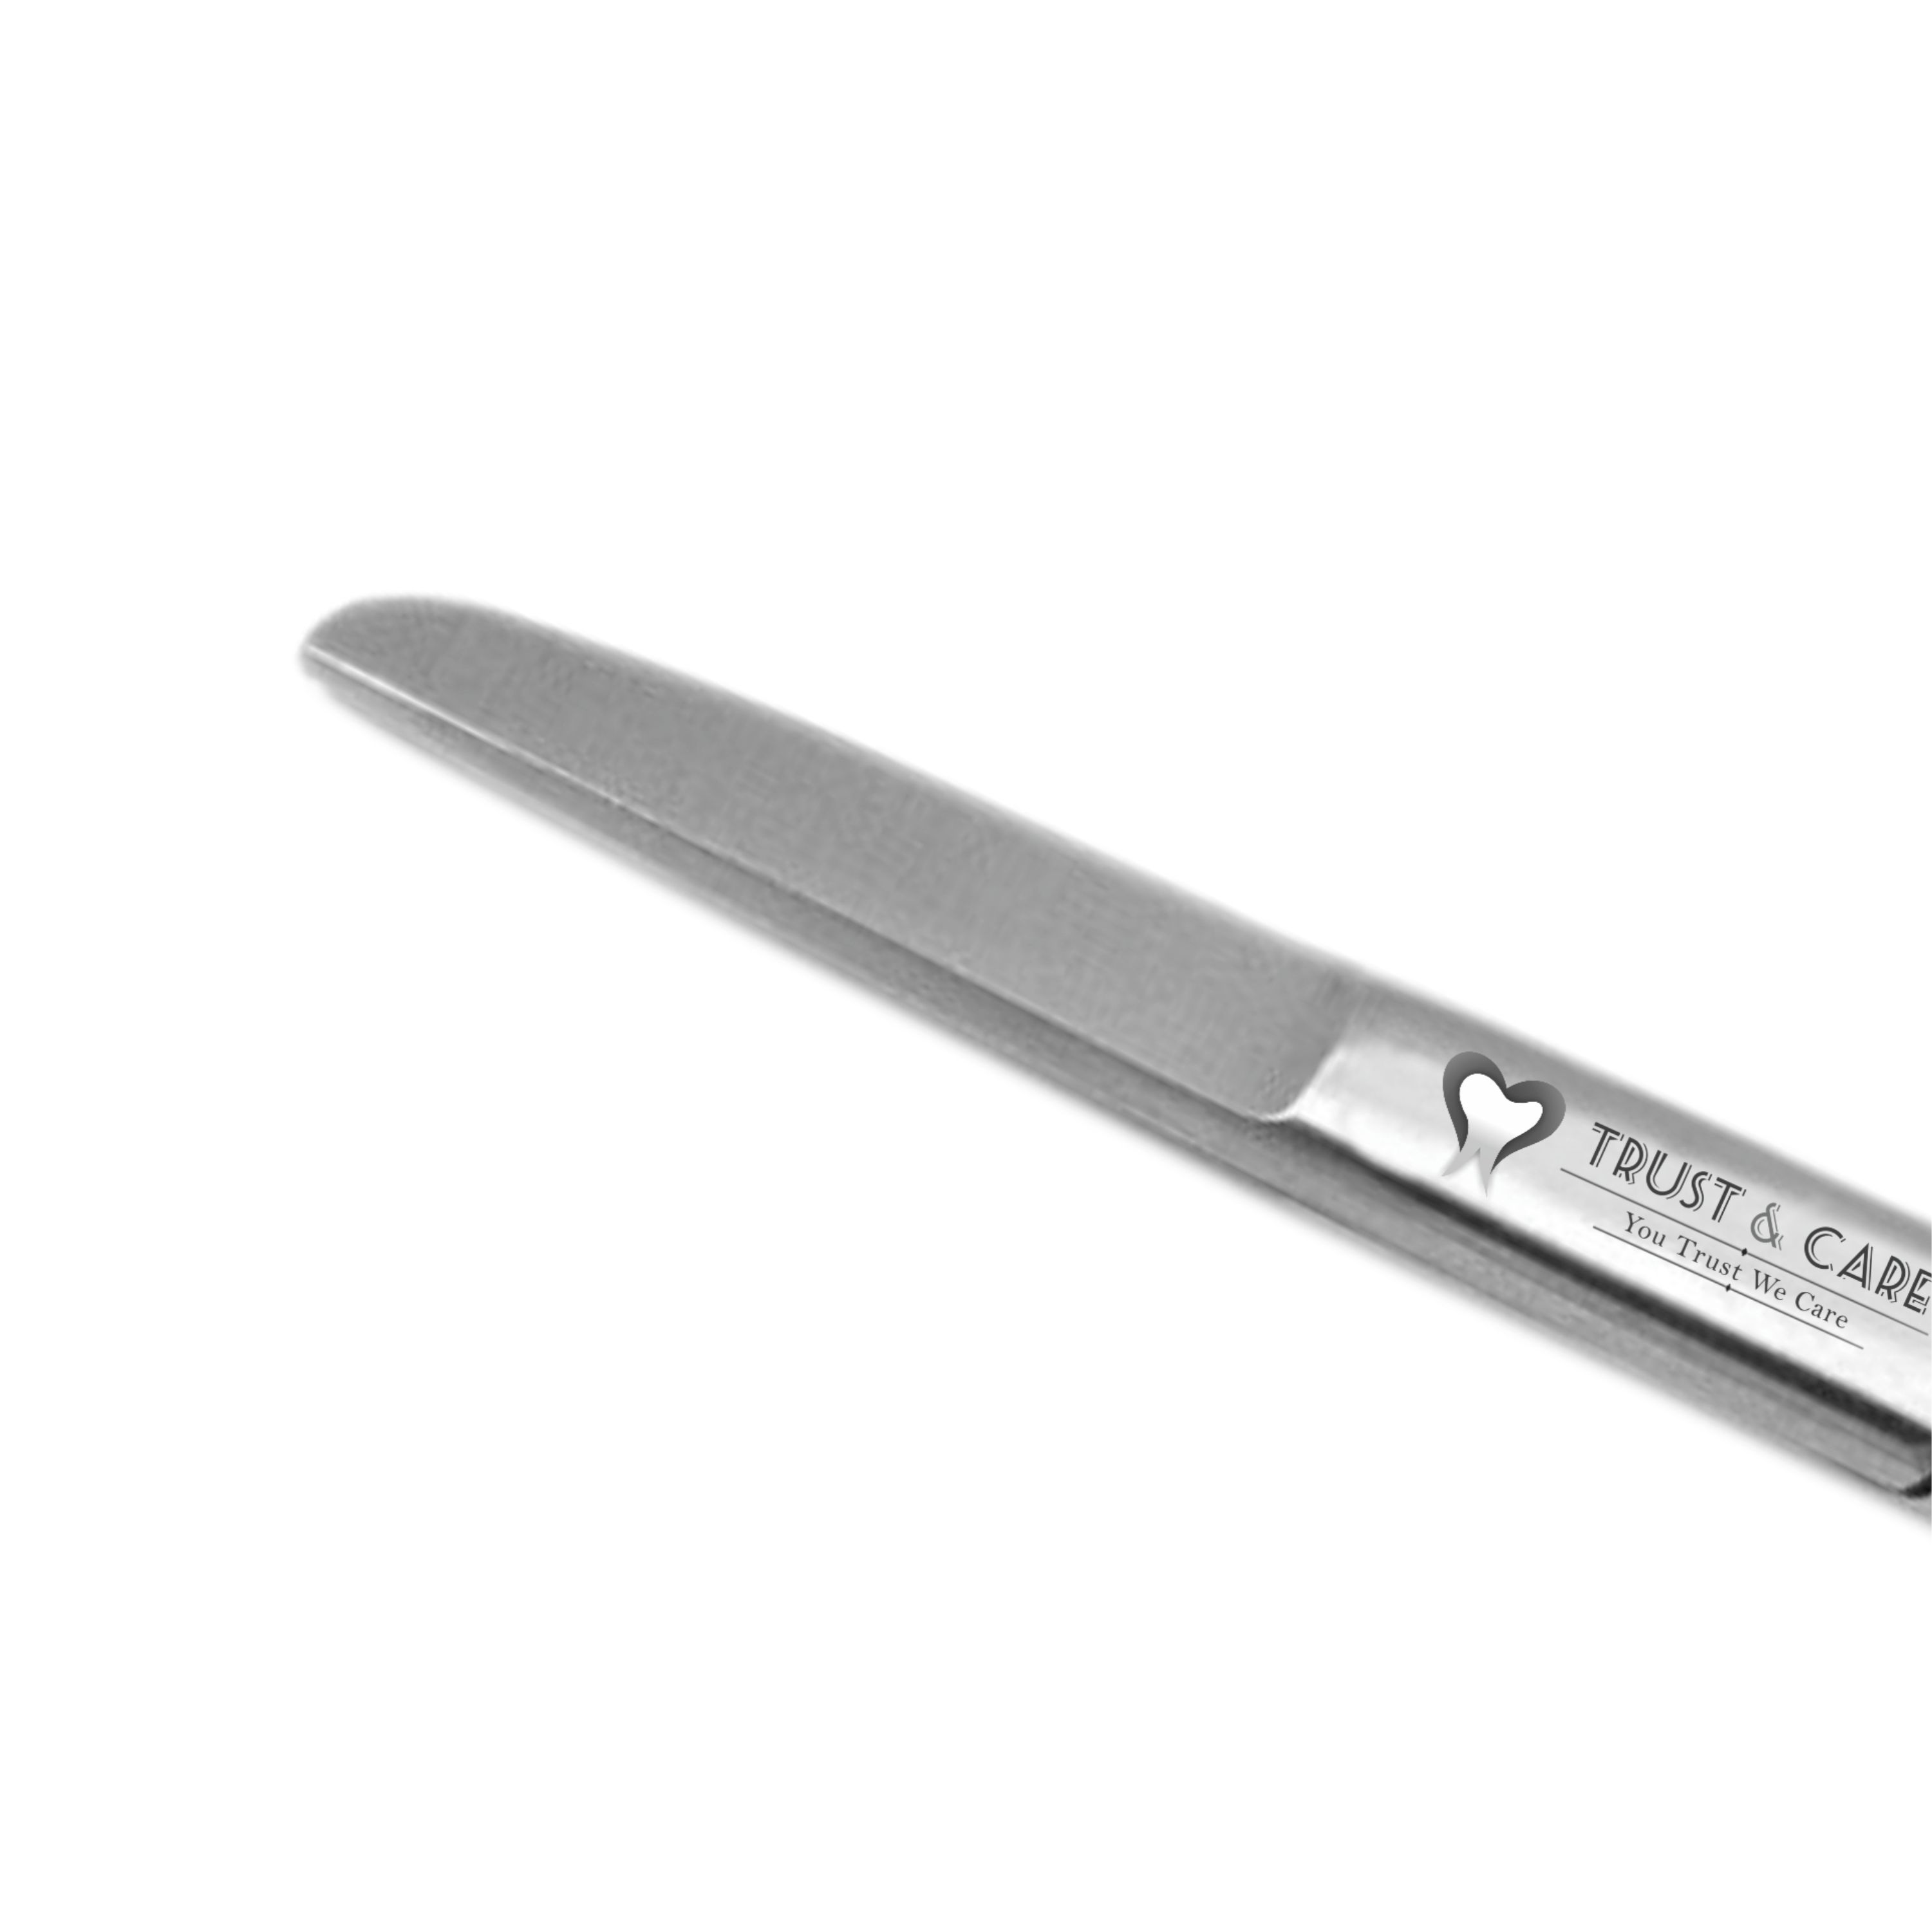 Trust & Care Spencer Suture Cutting Scissor 9 Cm Straight